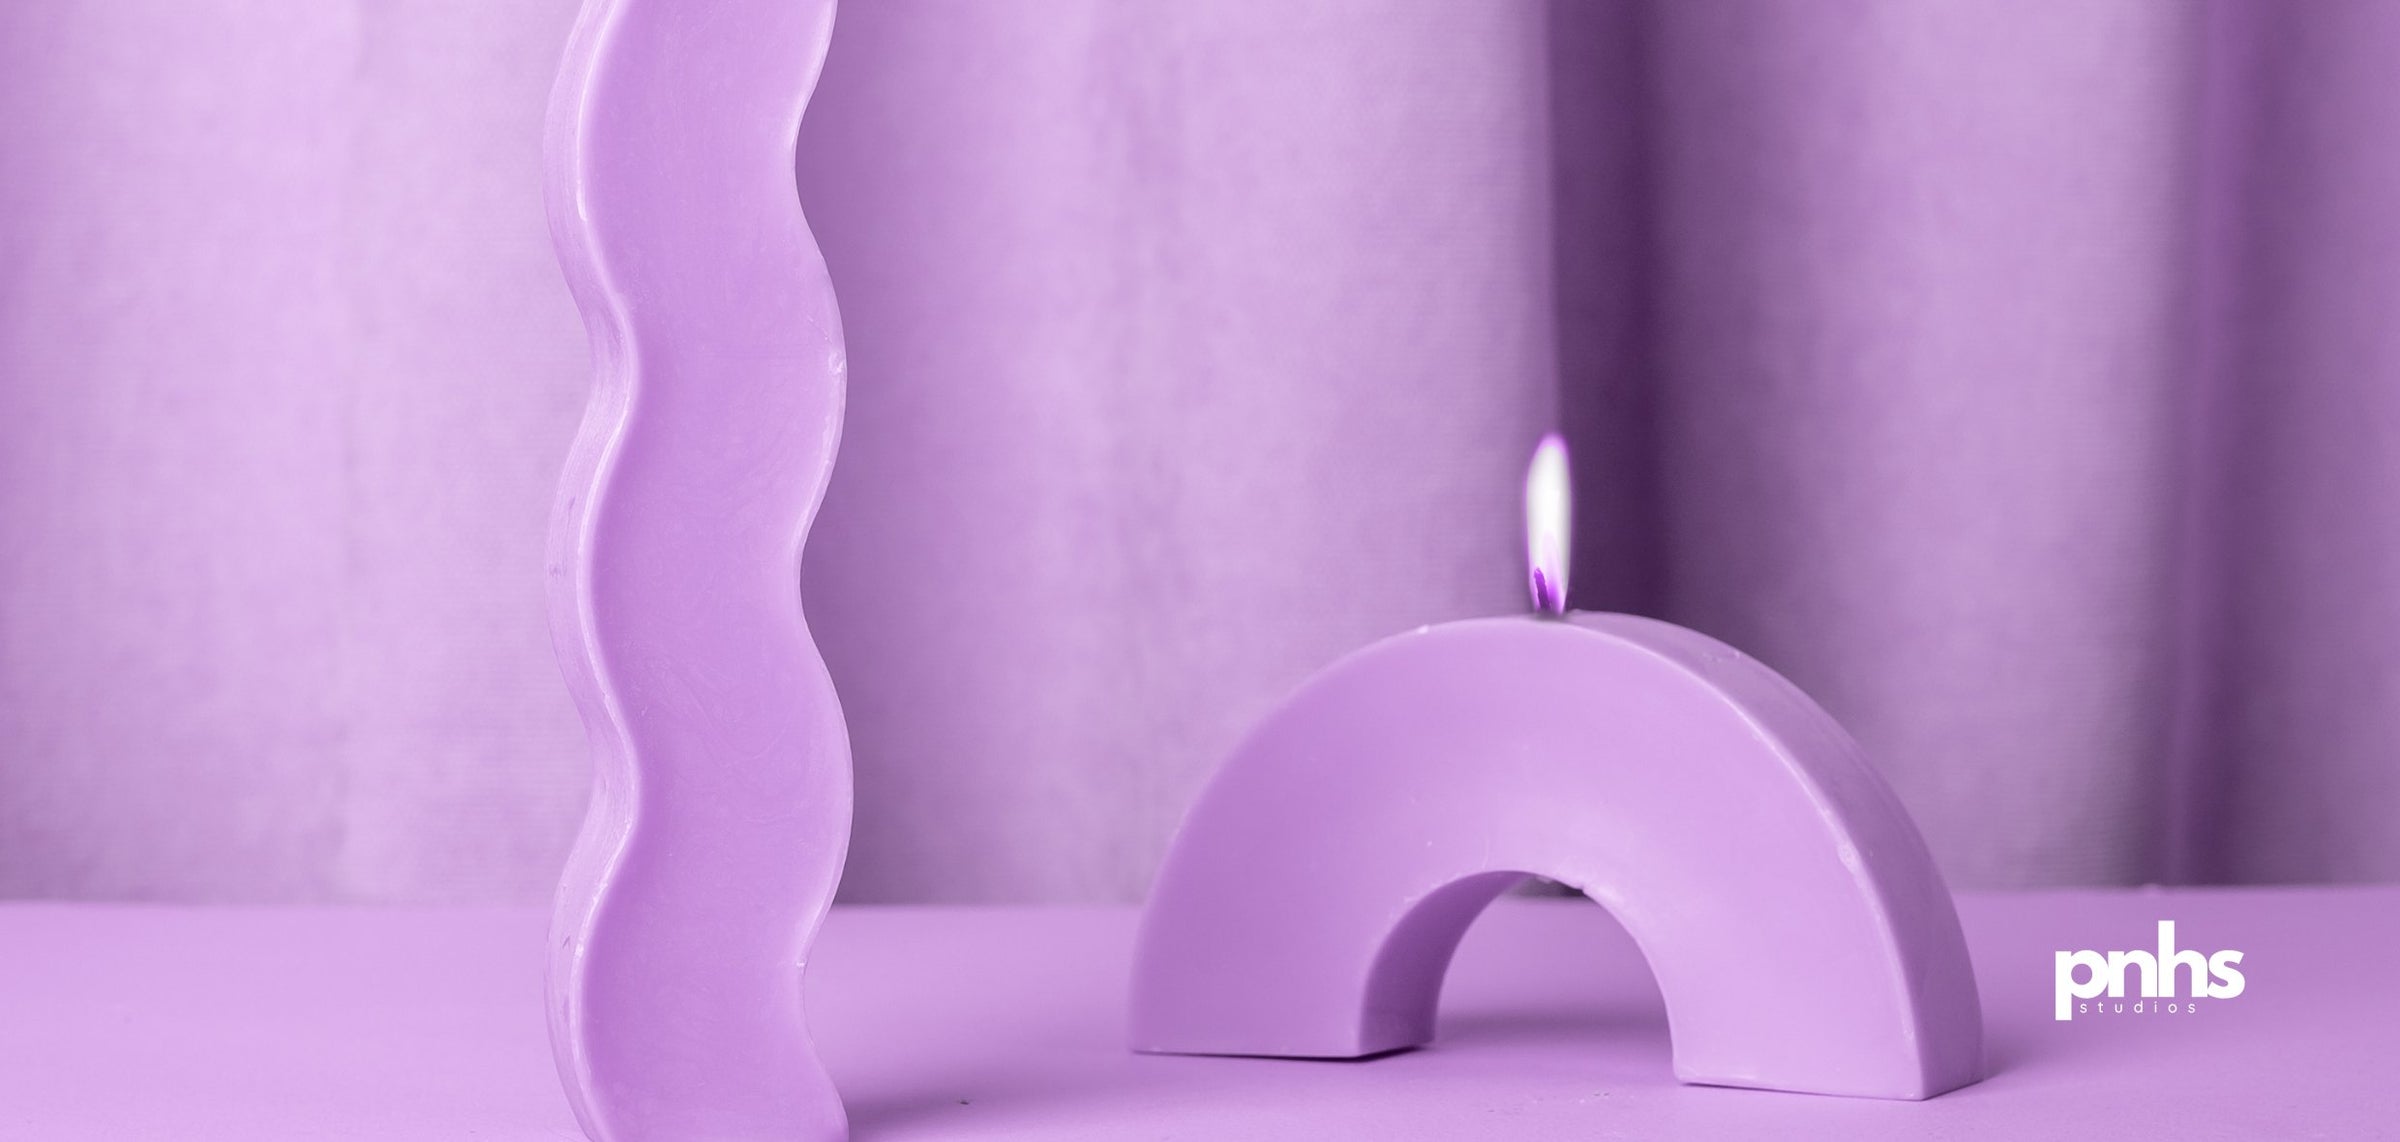 Kerzen und Kerzenhalter für stilvolles Ambiente und entspannte Atmosphäre in nachhaltigem Design